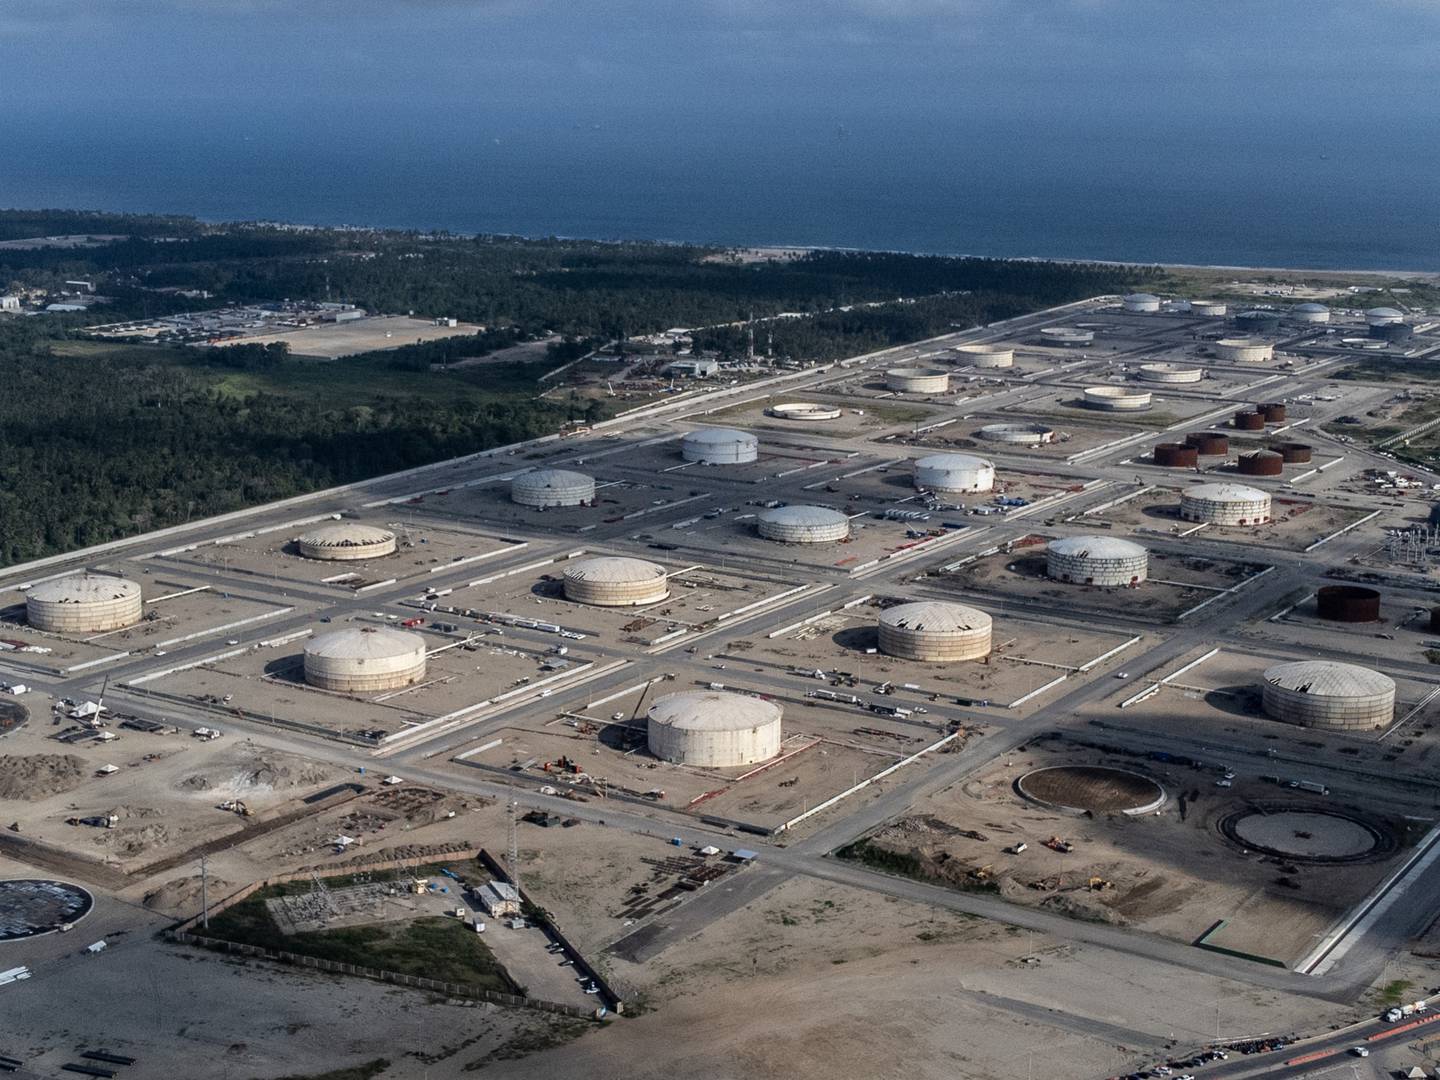 La refinería Dos Bocas de Petróleos Mexicanos (PEMEX) en construcción en Paraíso, estado de Tabasco, México, el viernes 4 de septiembre de 2021.Fotógrafo: César Rodríguez/Bloomberg